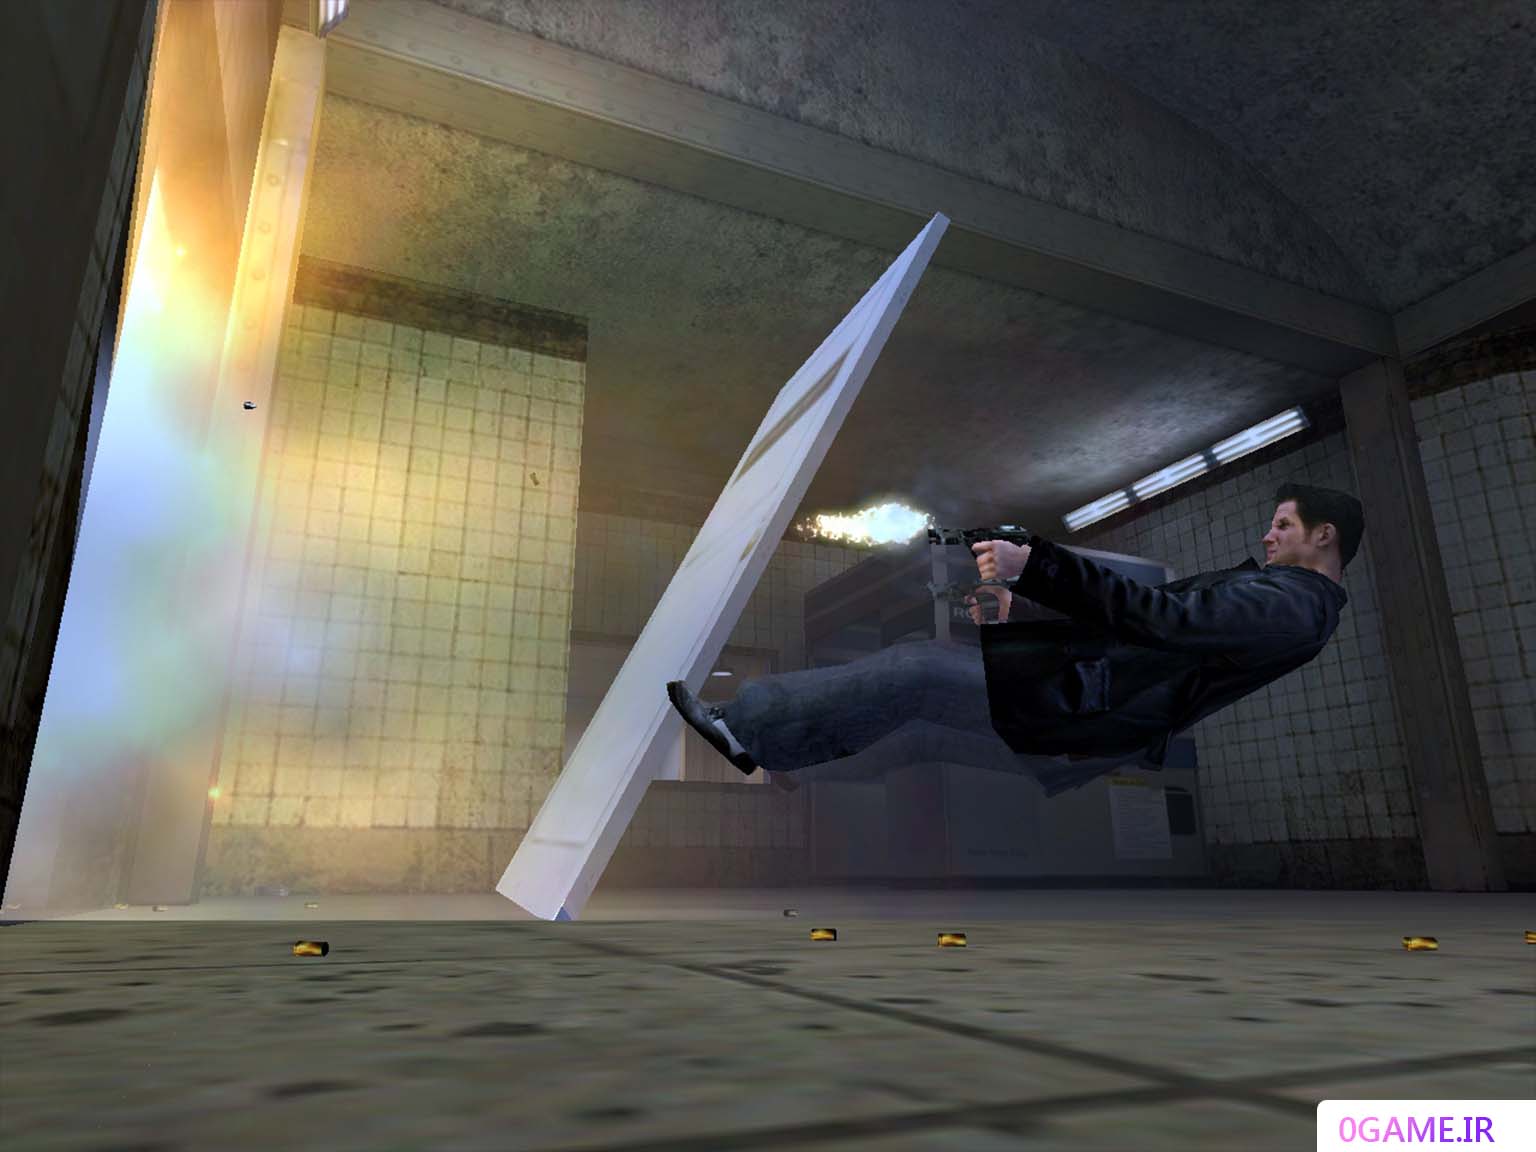 دانلود بازی مکس پین 1 (Max Payne) نسخه کامل برای کامپیوتر